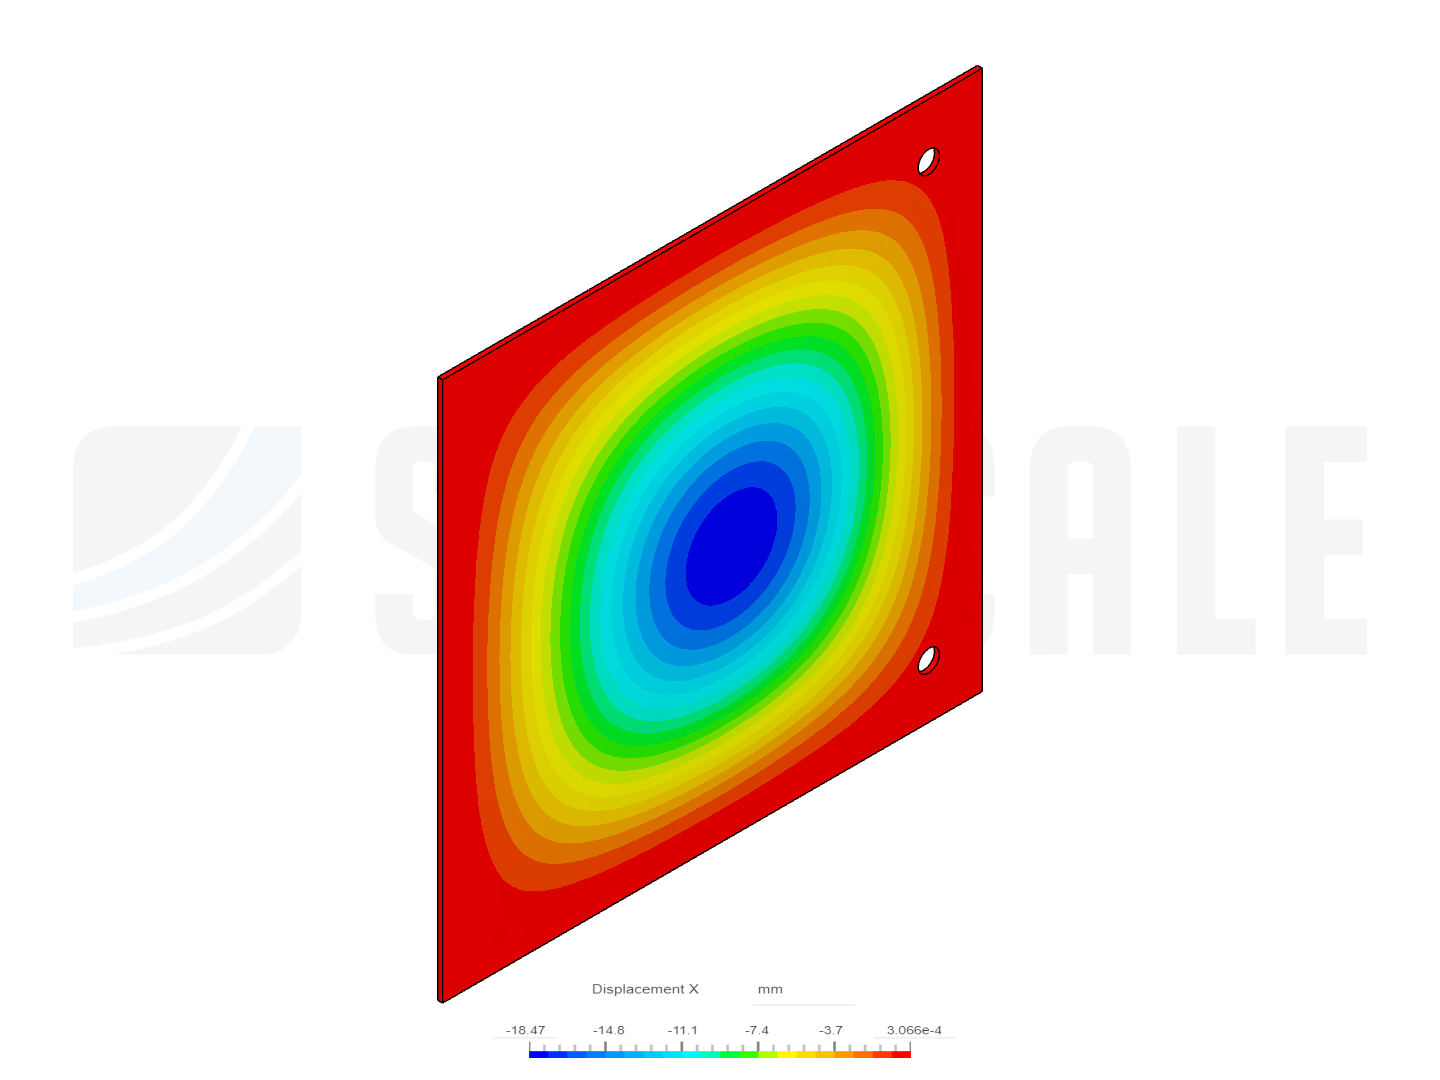 Flat Plate simulation image